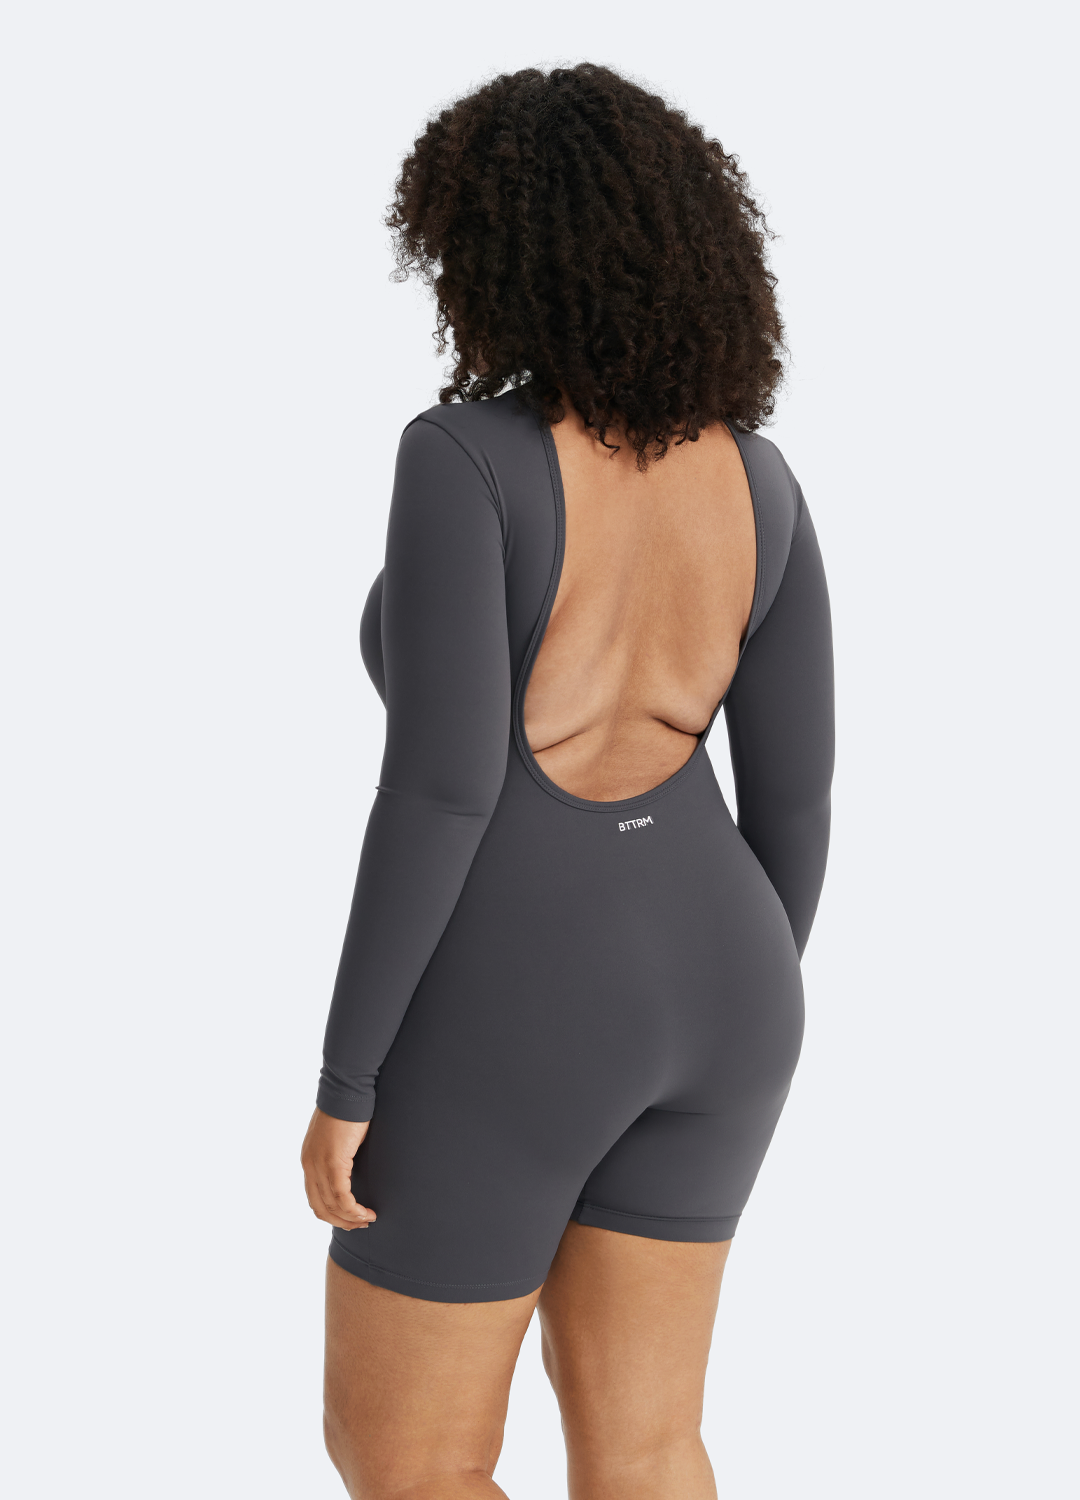 BetterMe Grey Sleeveless High-Neck Bodysuit for women – BetterMe Store